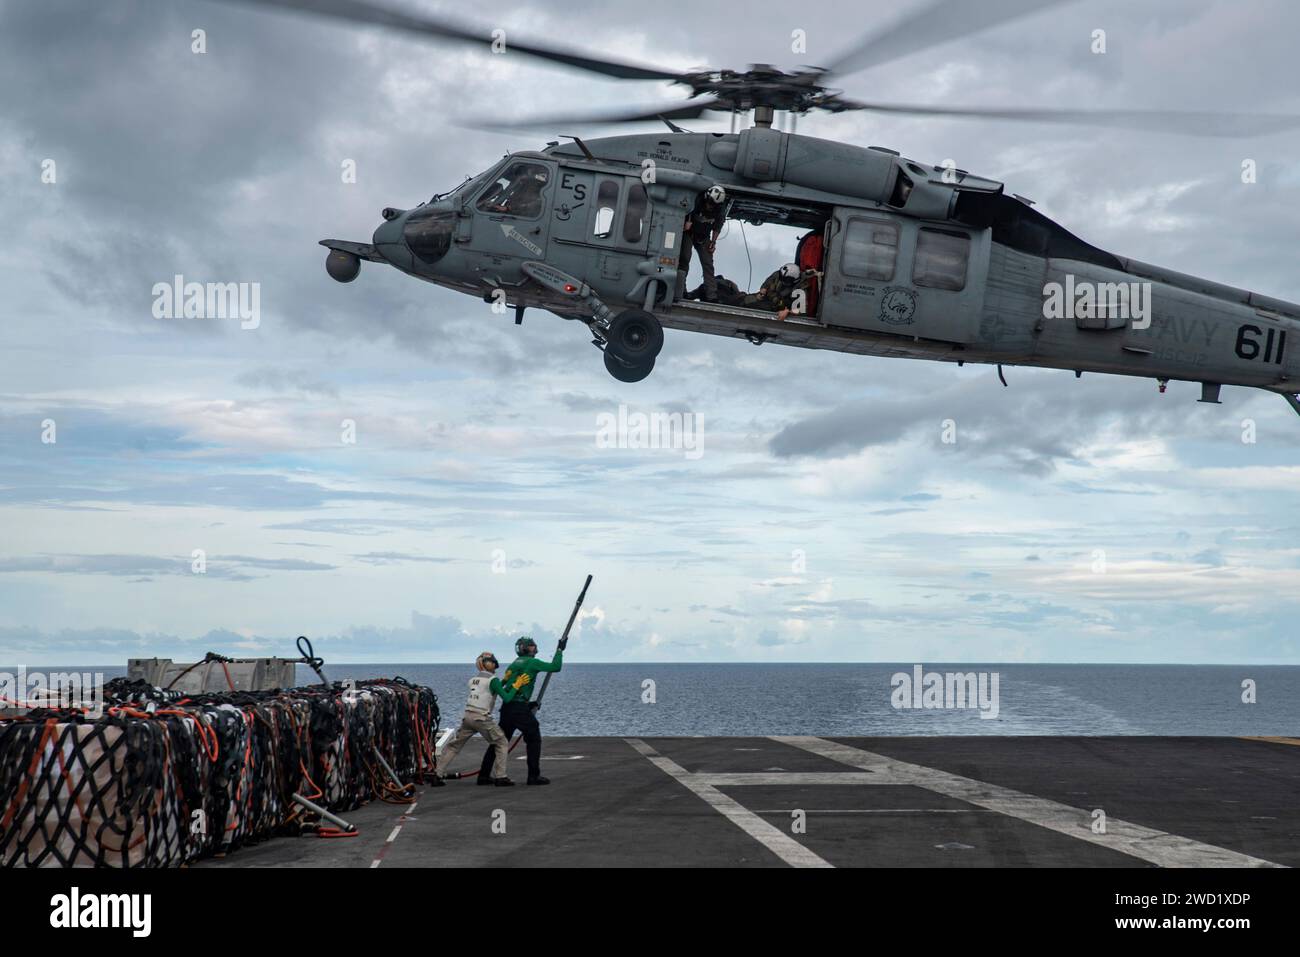 Les aviateurs attachent des fournitures à un hélicoptère MH-60S Sea Hawk lors d'un réapprovisionnement en mer. Banque D'Images